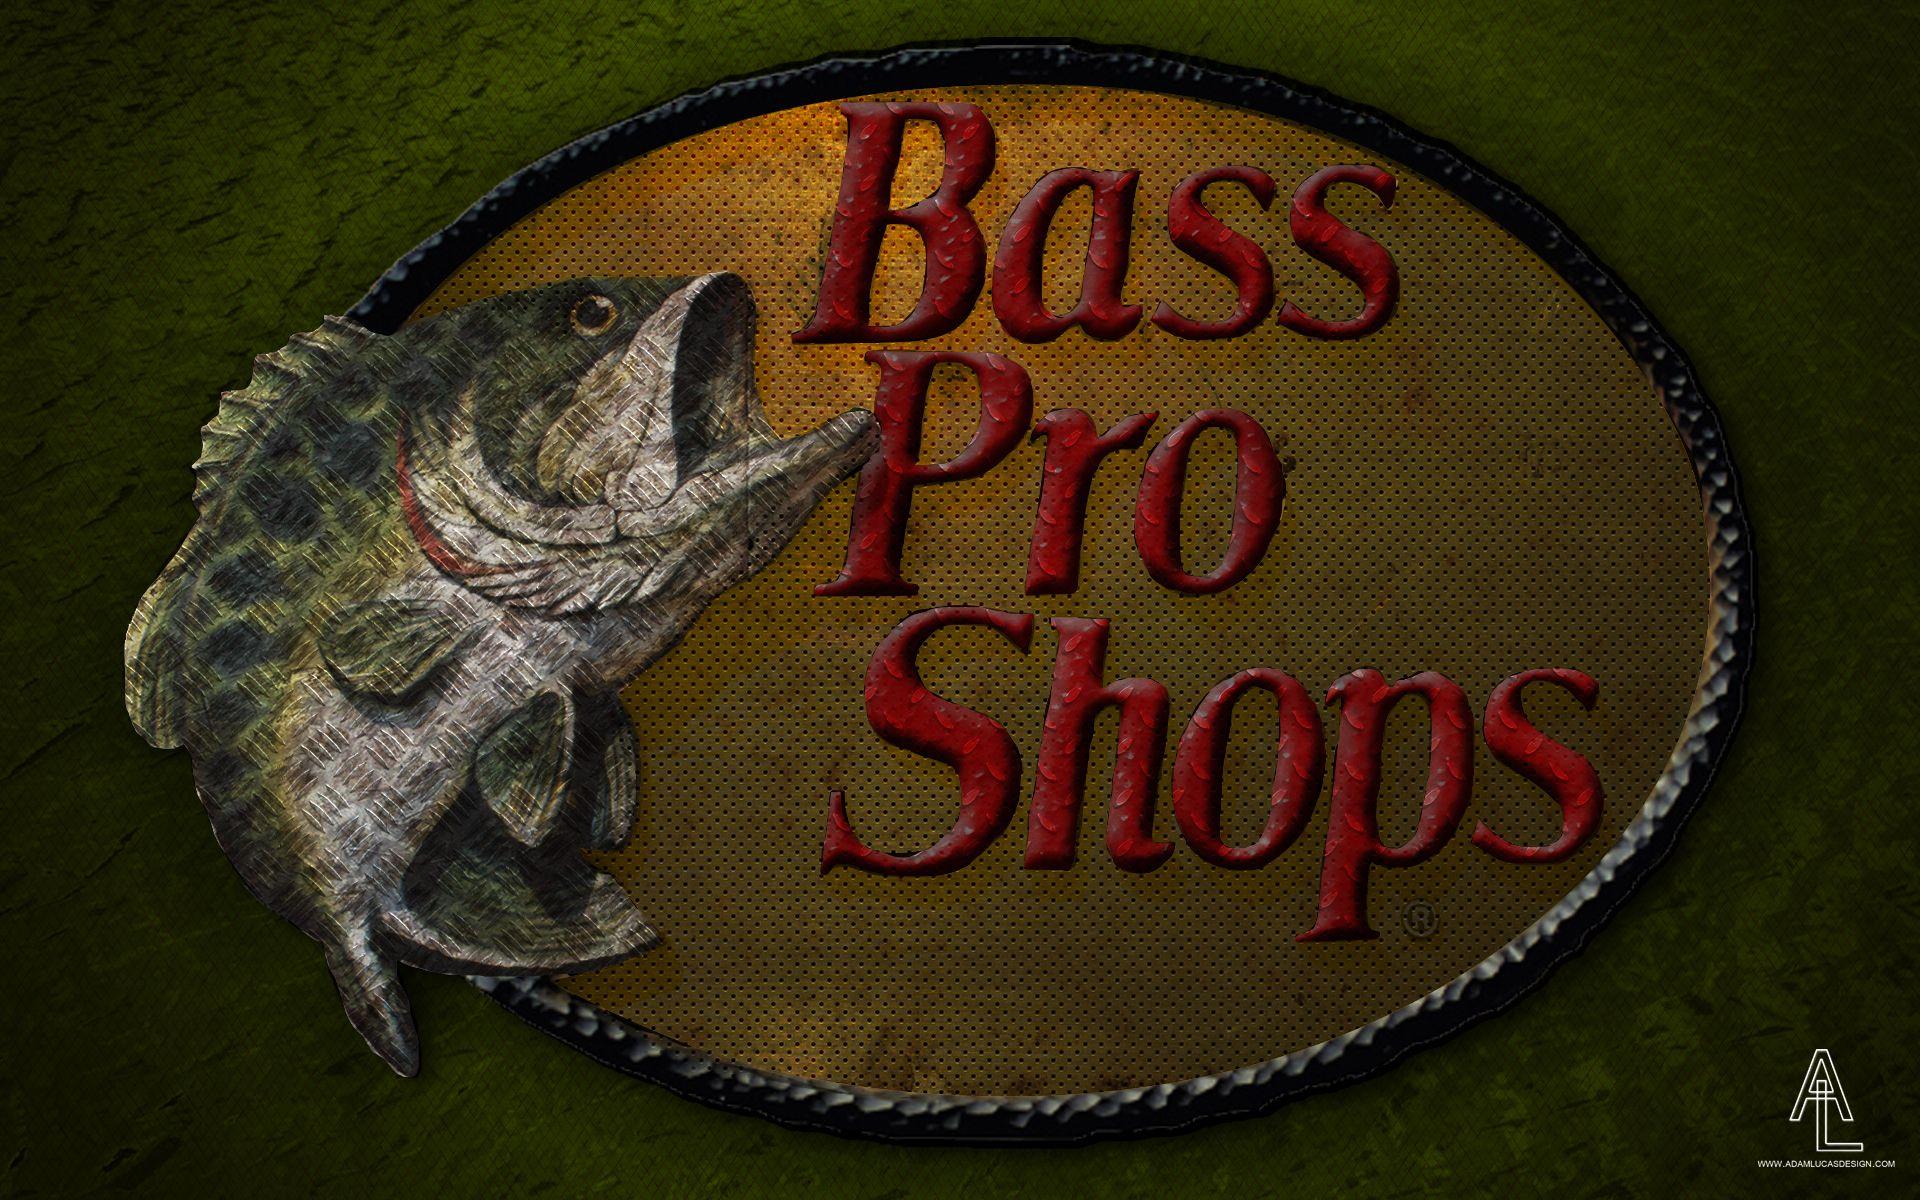 Logo Bass Pro Shop Wallpapers